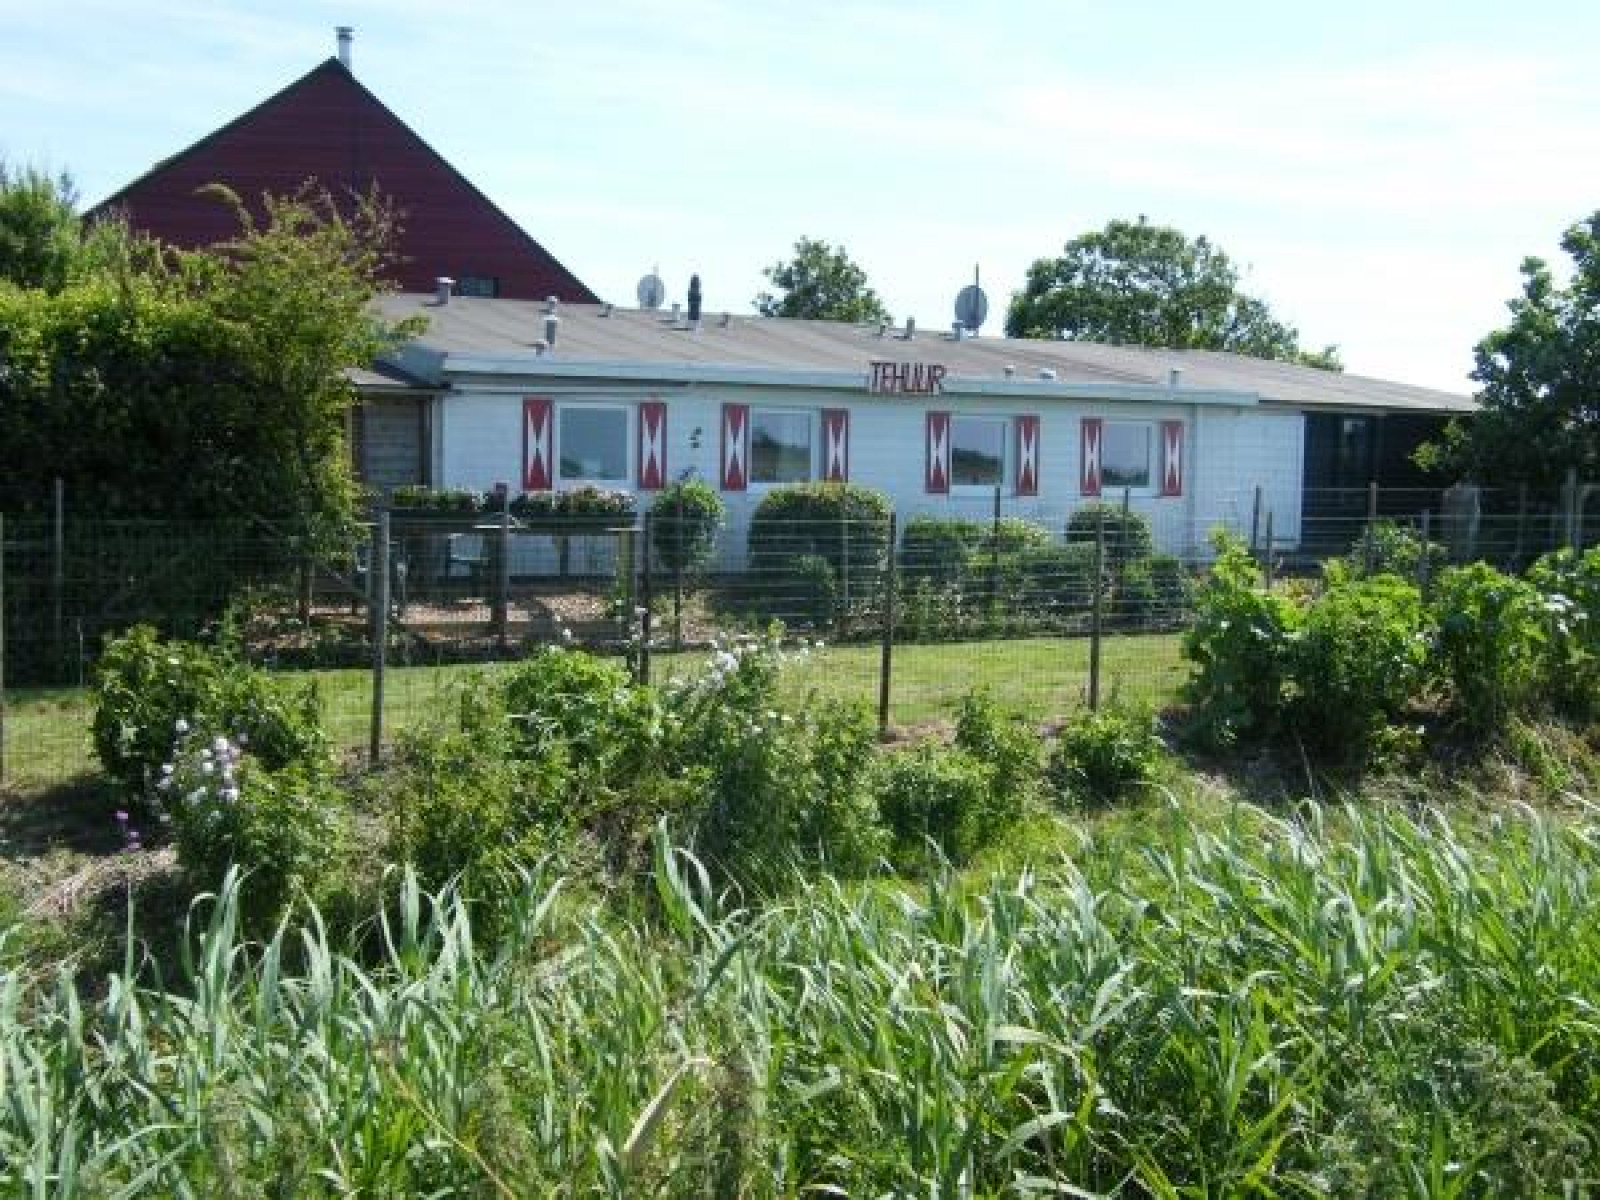 Heerlijkehuisjes.nl Knus 2 persoons vakantiehuis in Moriaanshoofd op Schouwen-Duiveland - Nederland - Europa - Moriaanshoofd